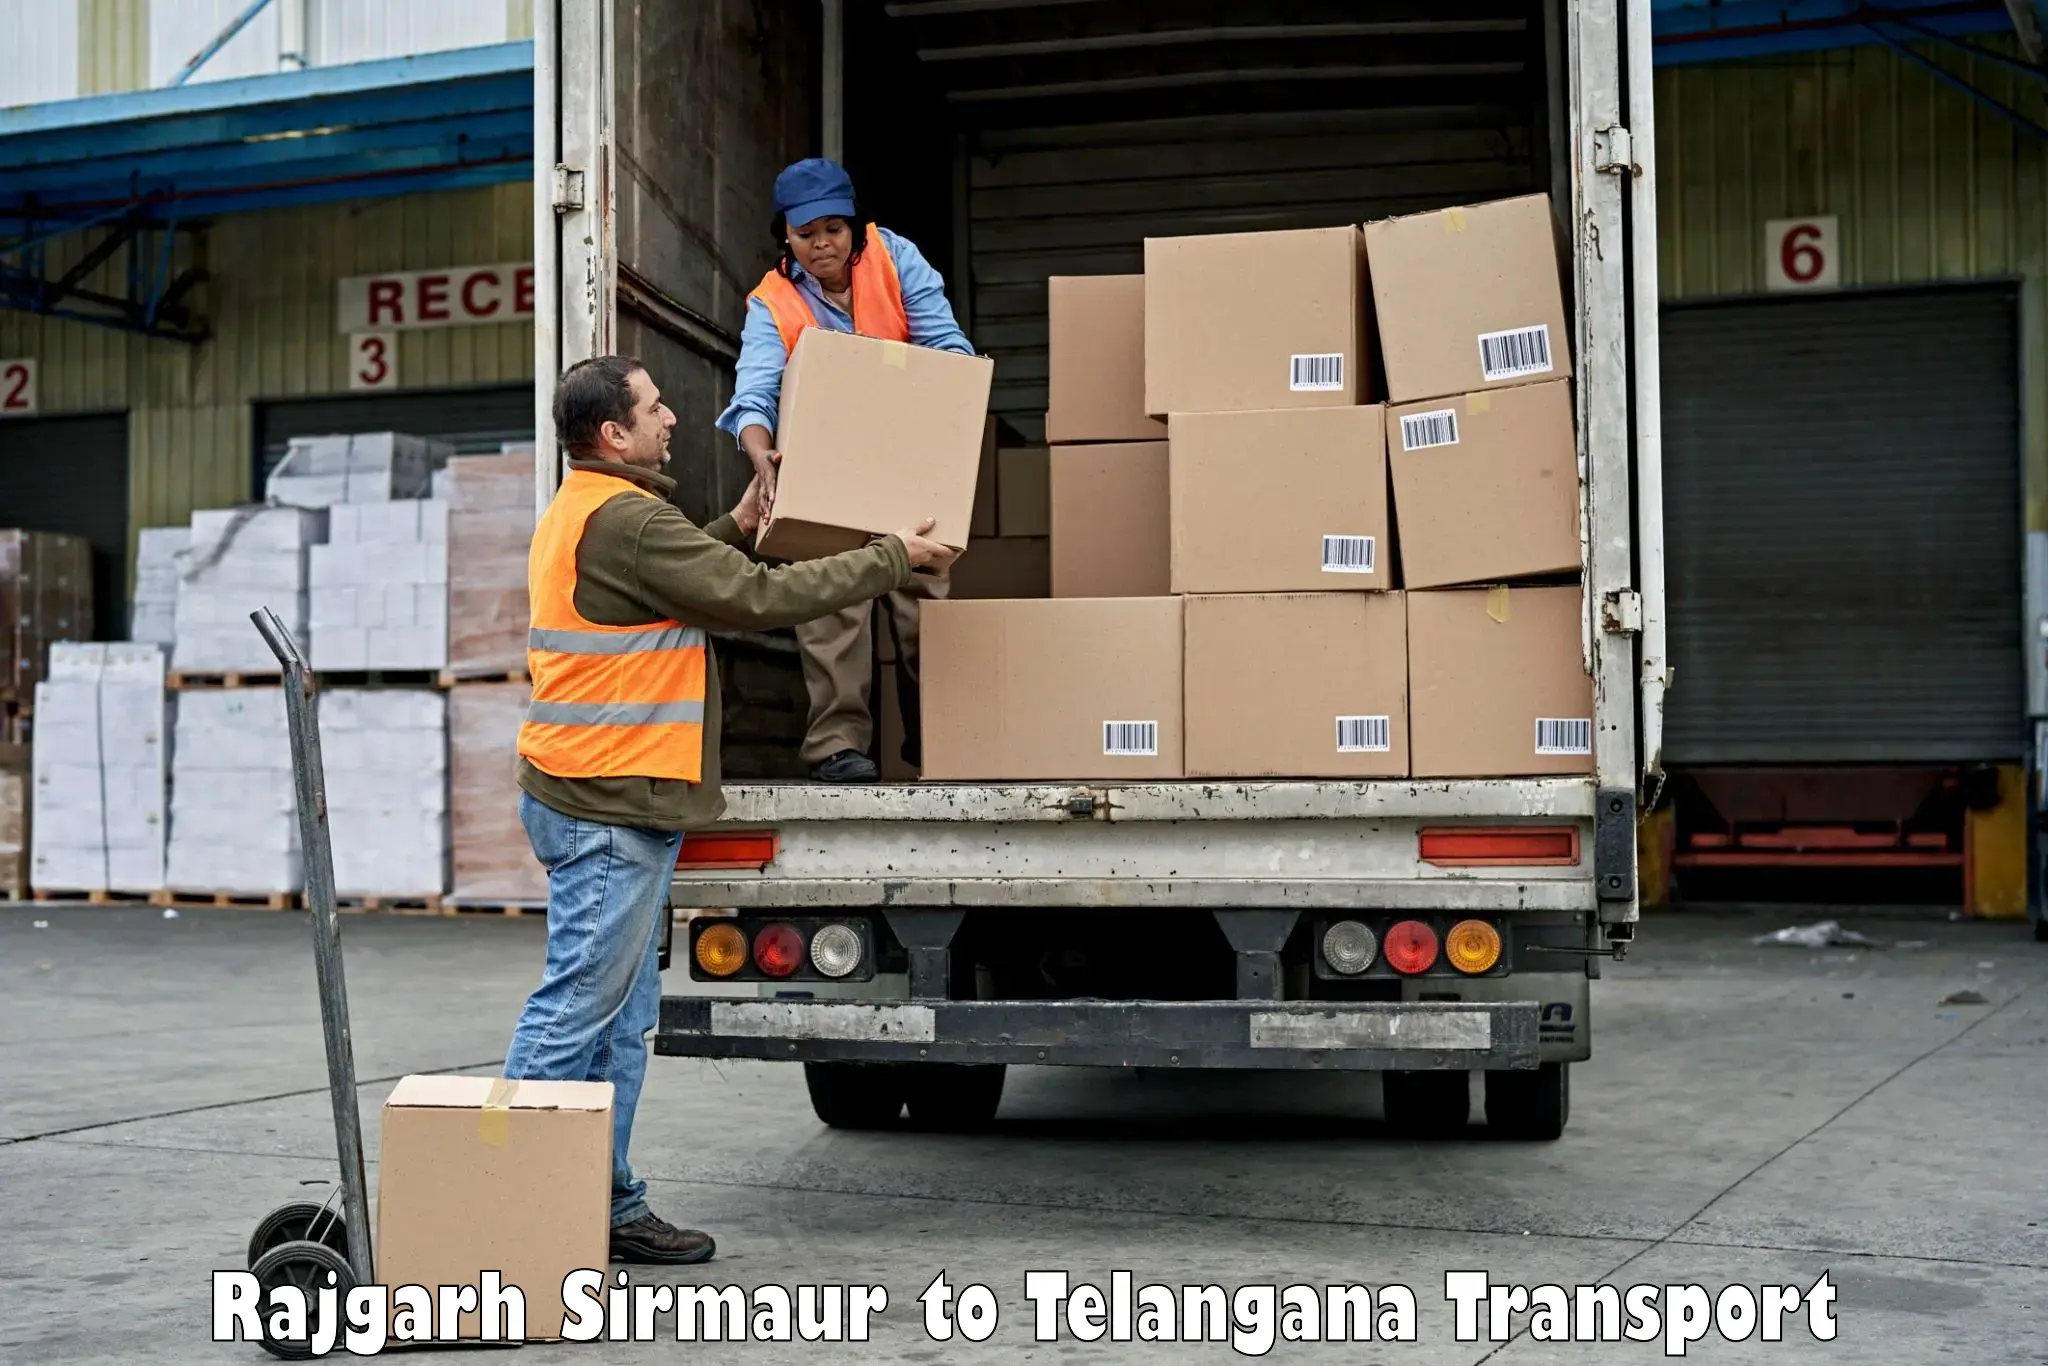 Road transport online services Rajgarh Sirmaur to Telangana